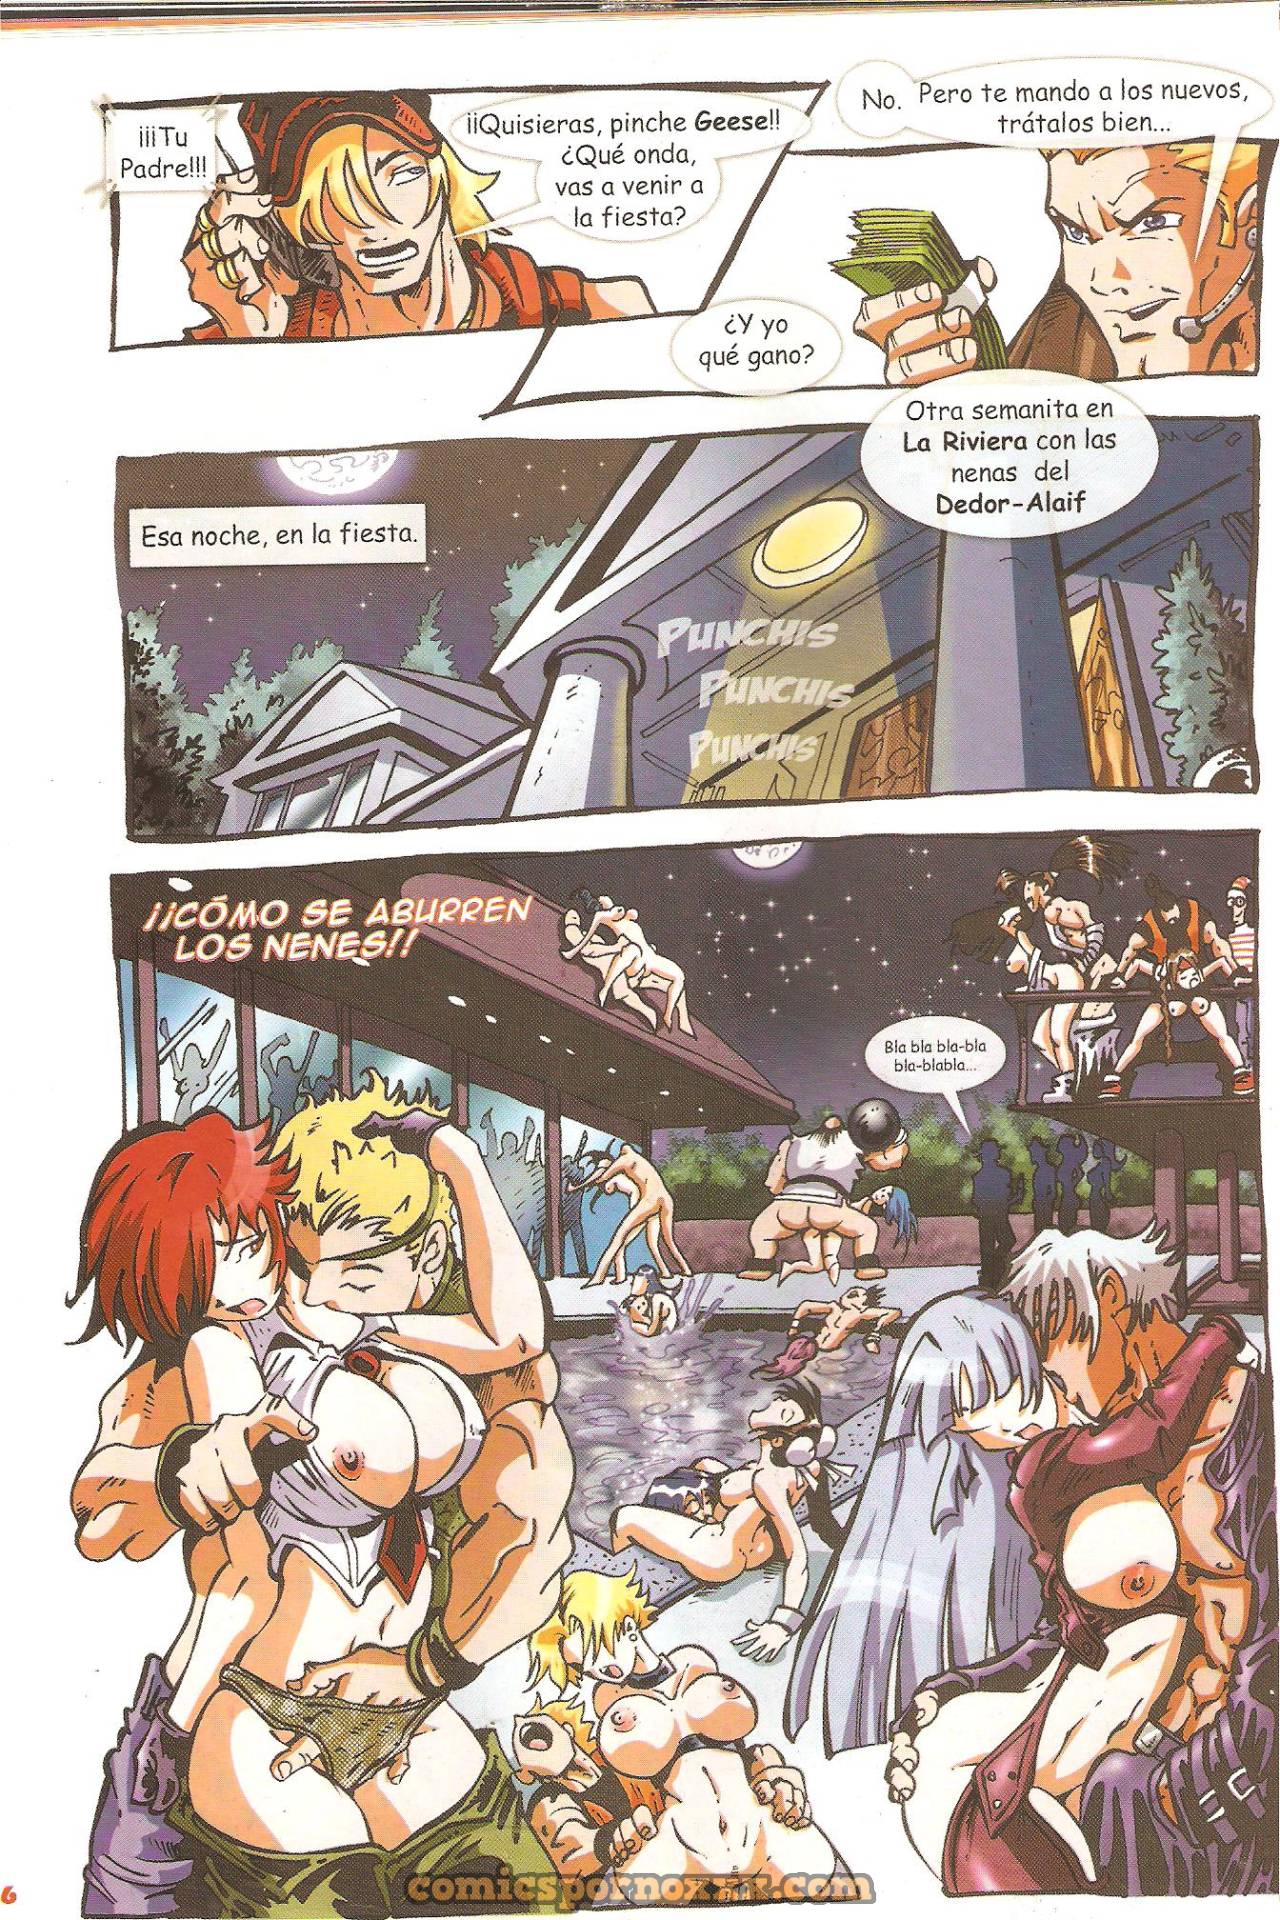 FOK Maxiboobs Impact (Parodias 3X) - 9 - Comics Porno - Hentai Manga - Cartoon XXX